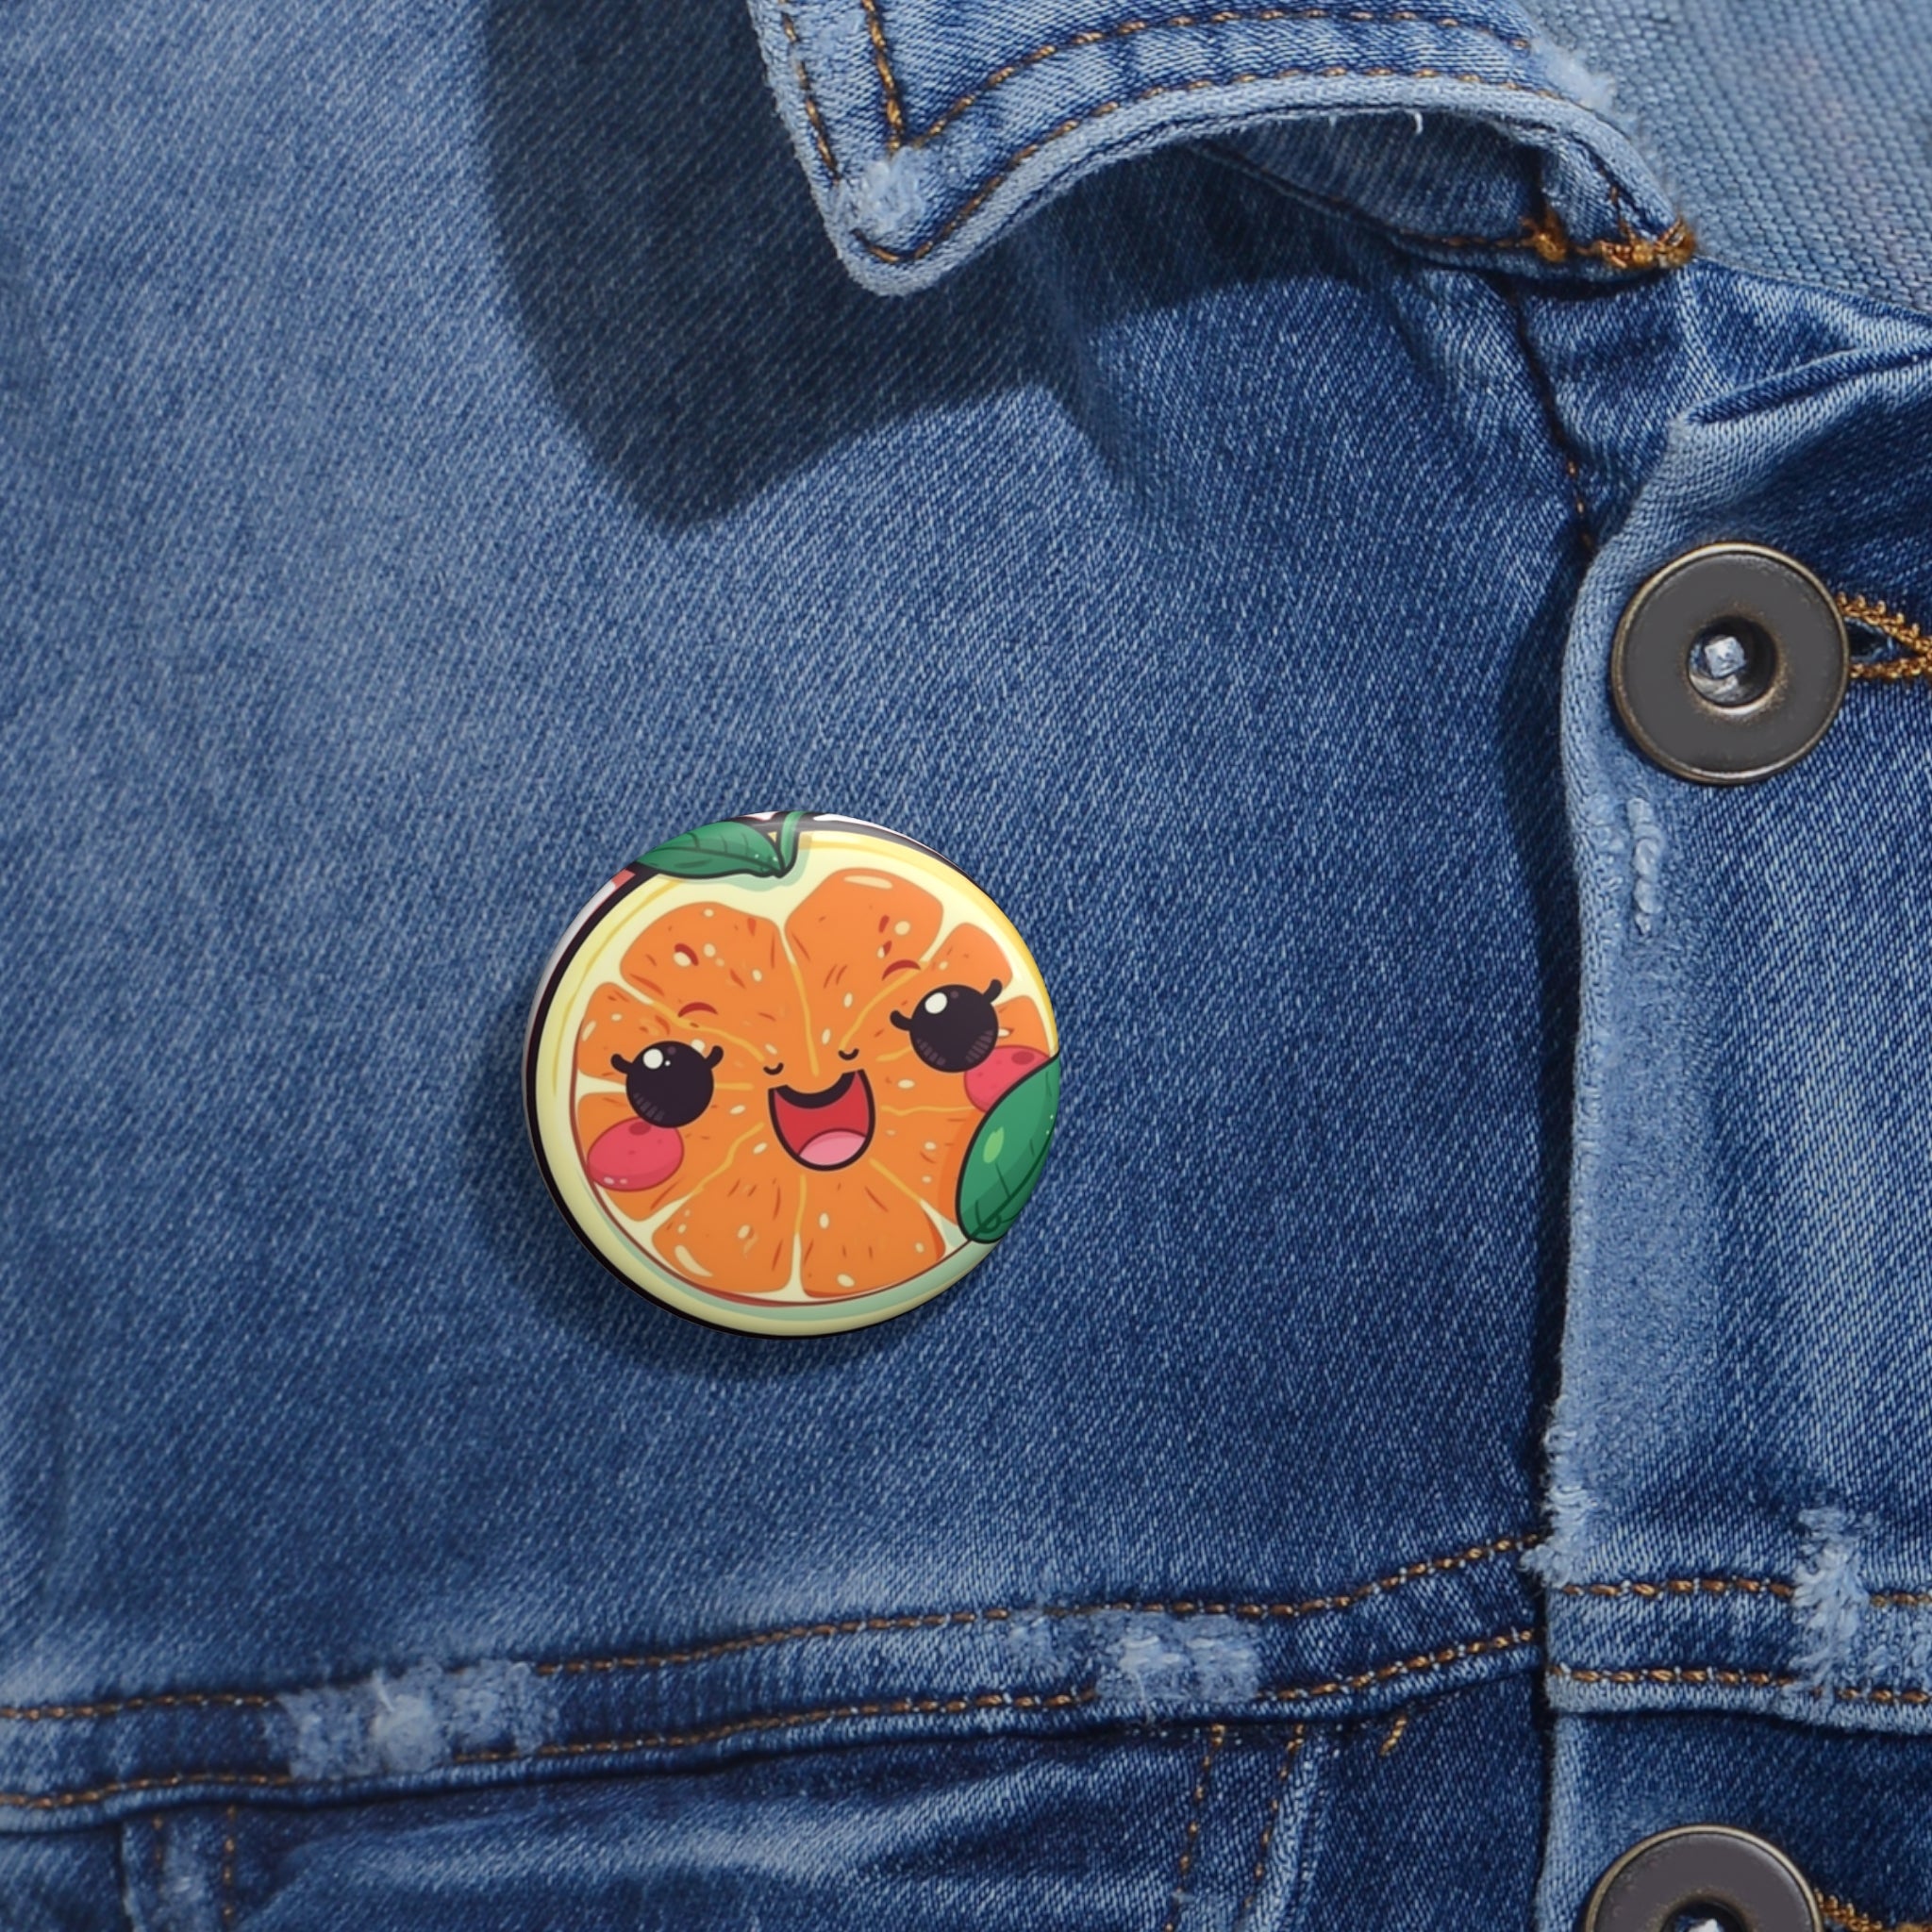 Custom Pin Buttons - Grapefruit